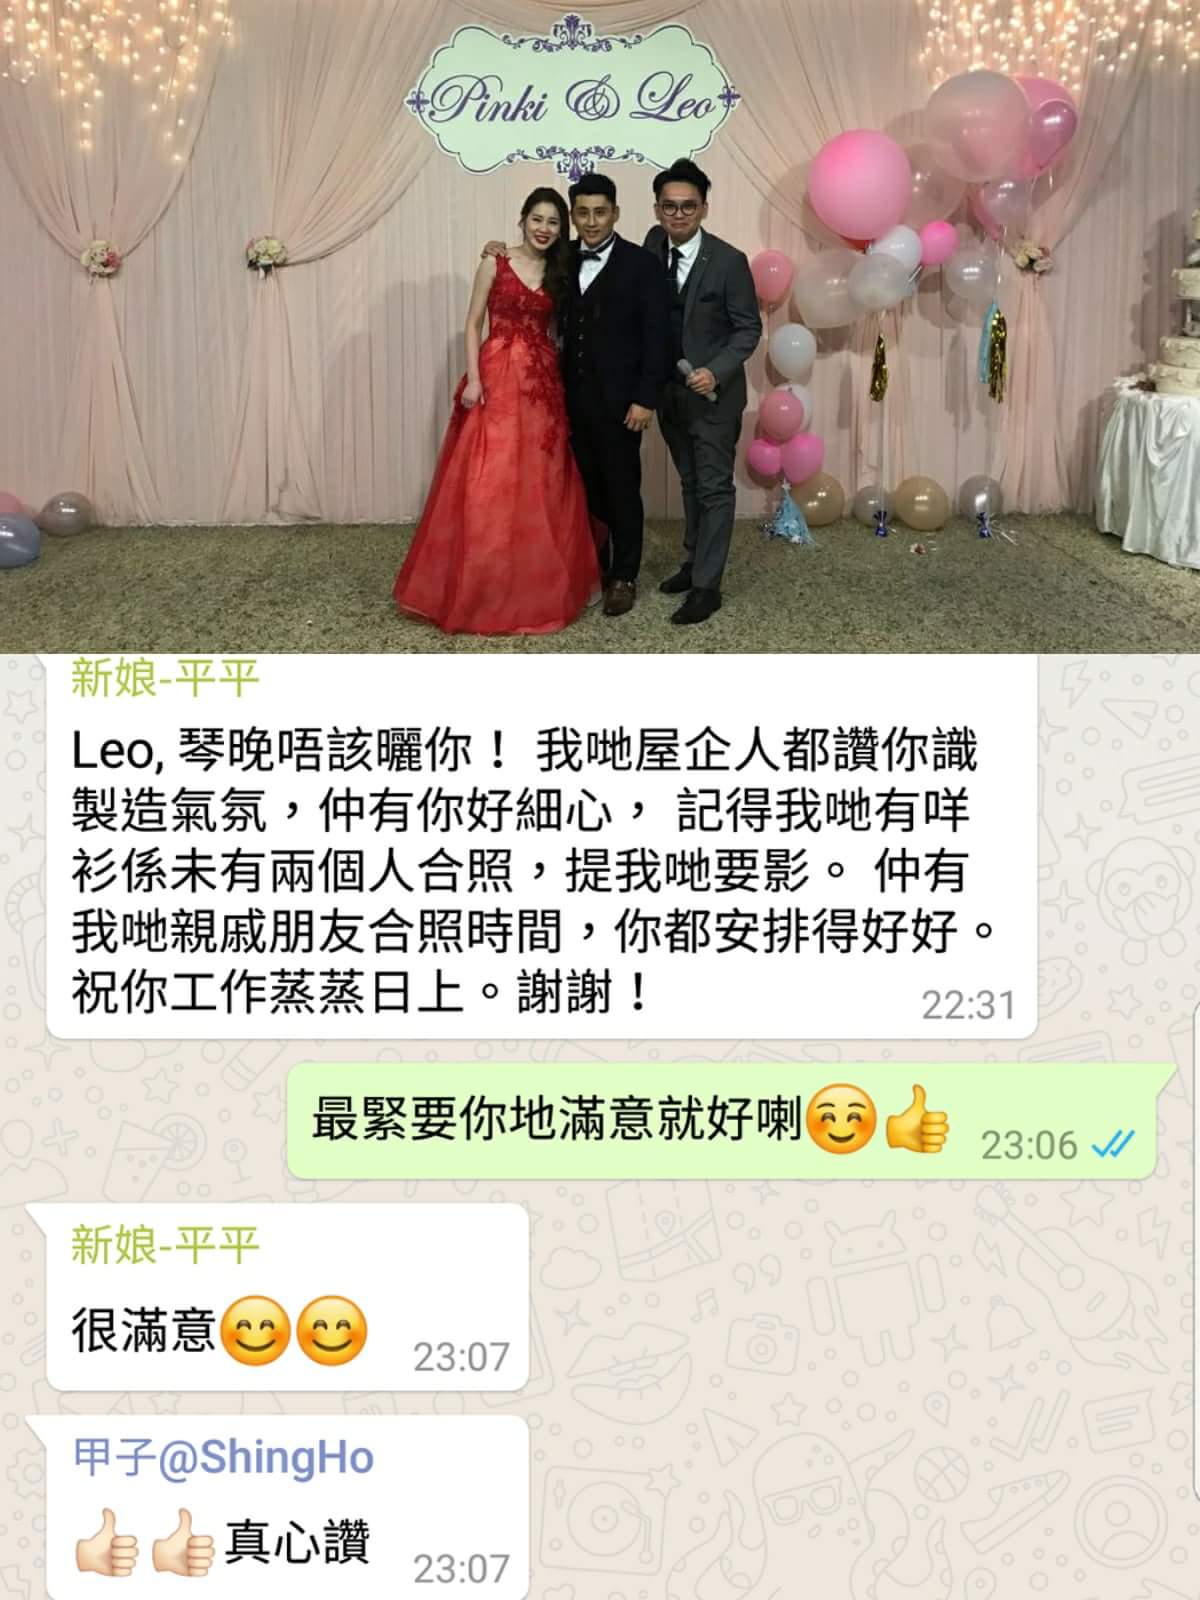 婚禮司儀 Mc Leo ho司儀工作紀錄: 婚禮司儀 Wedding MC Outjob (MC Leo) (11, Dec 2017 北京道一號東海薈  